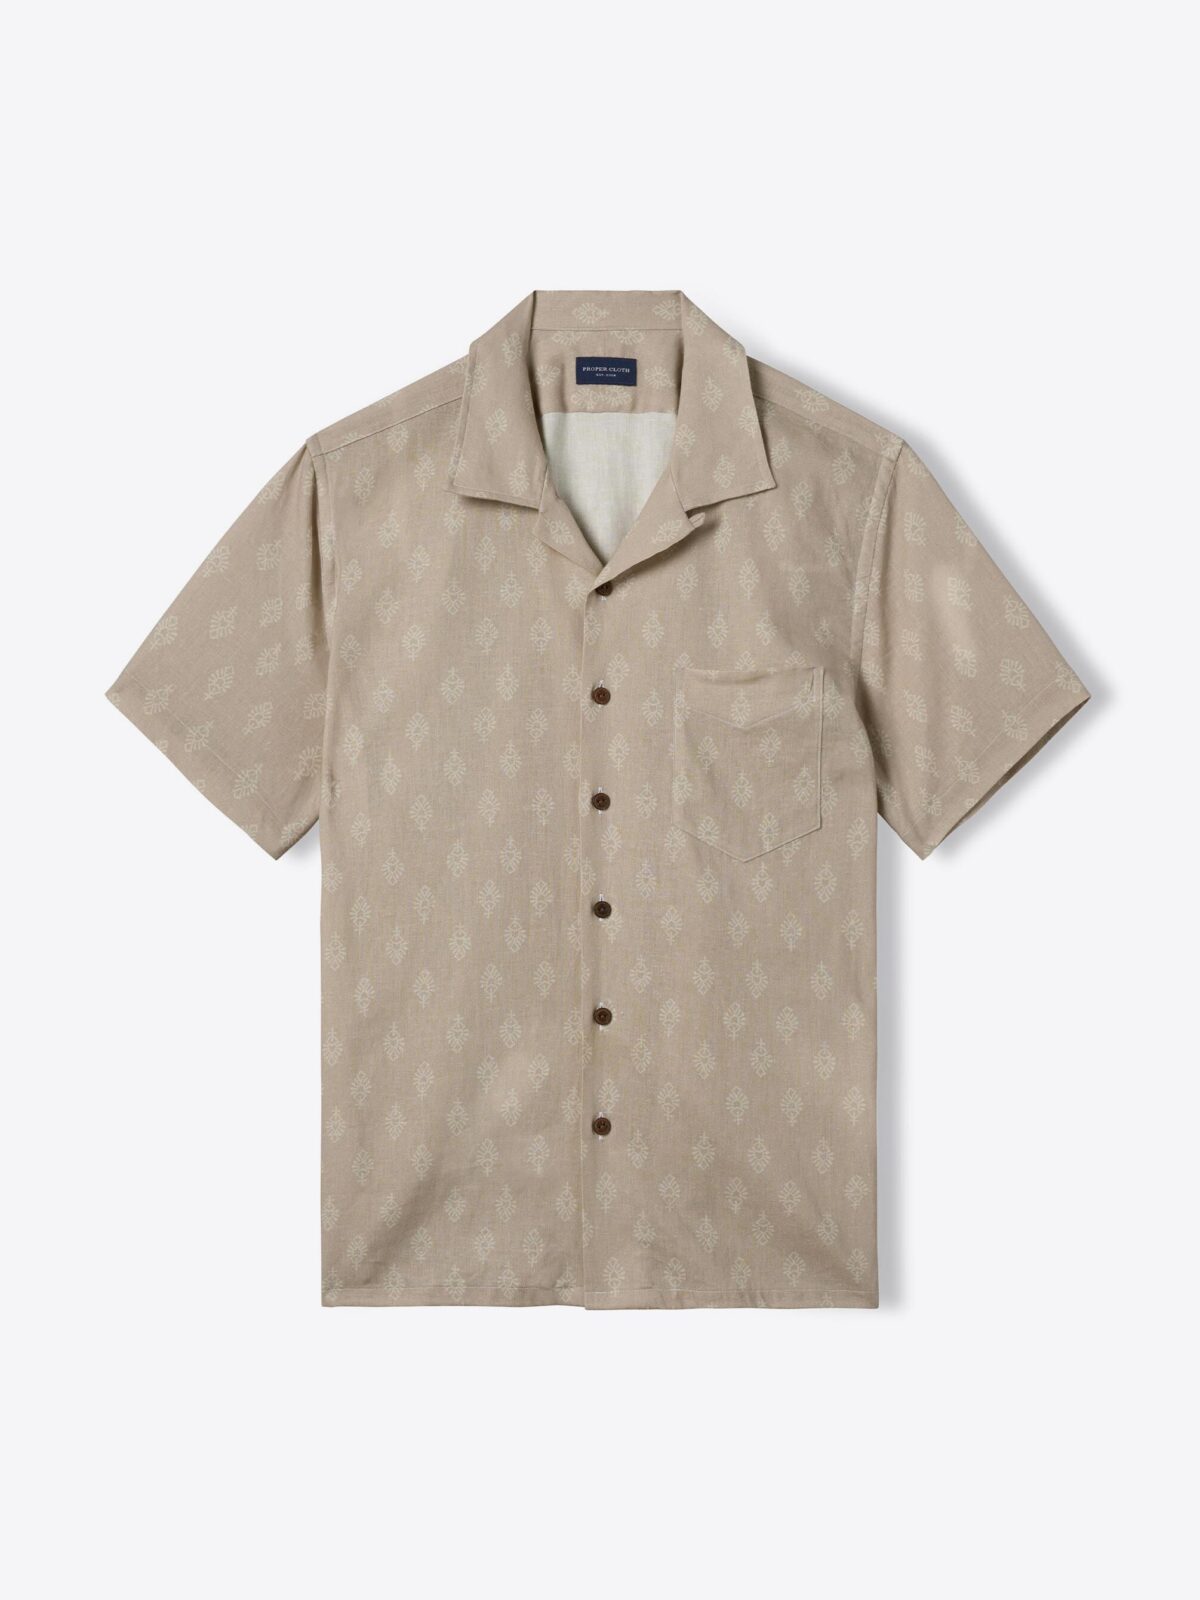 LV Printed Leaf Regular Shirt - Ready to Wear